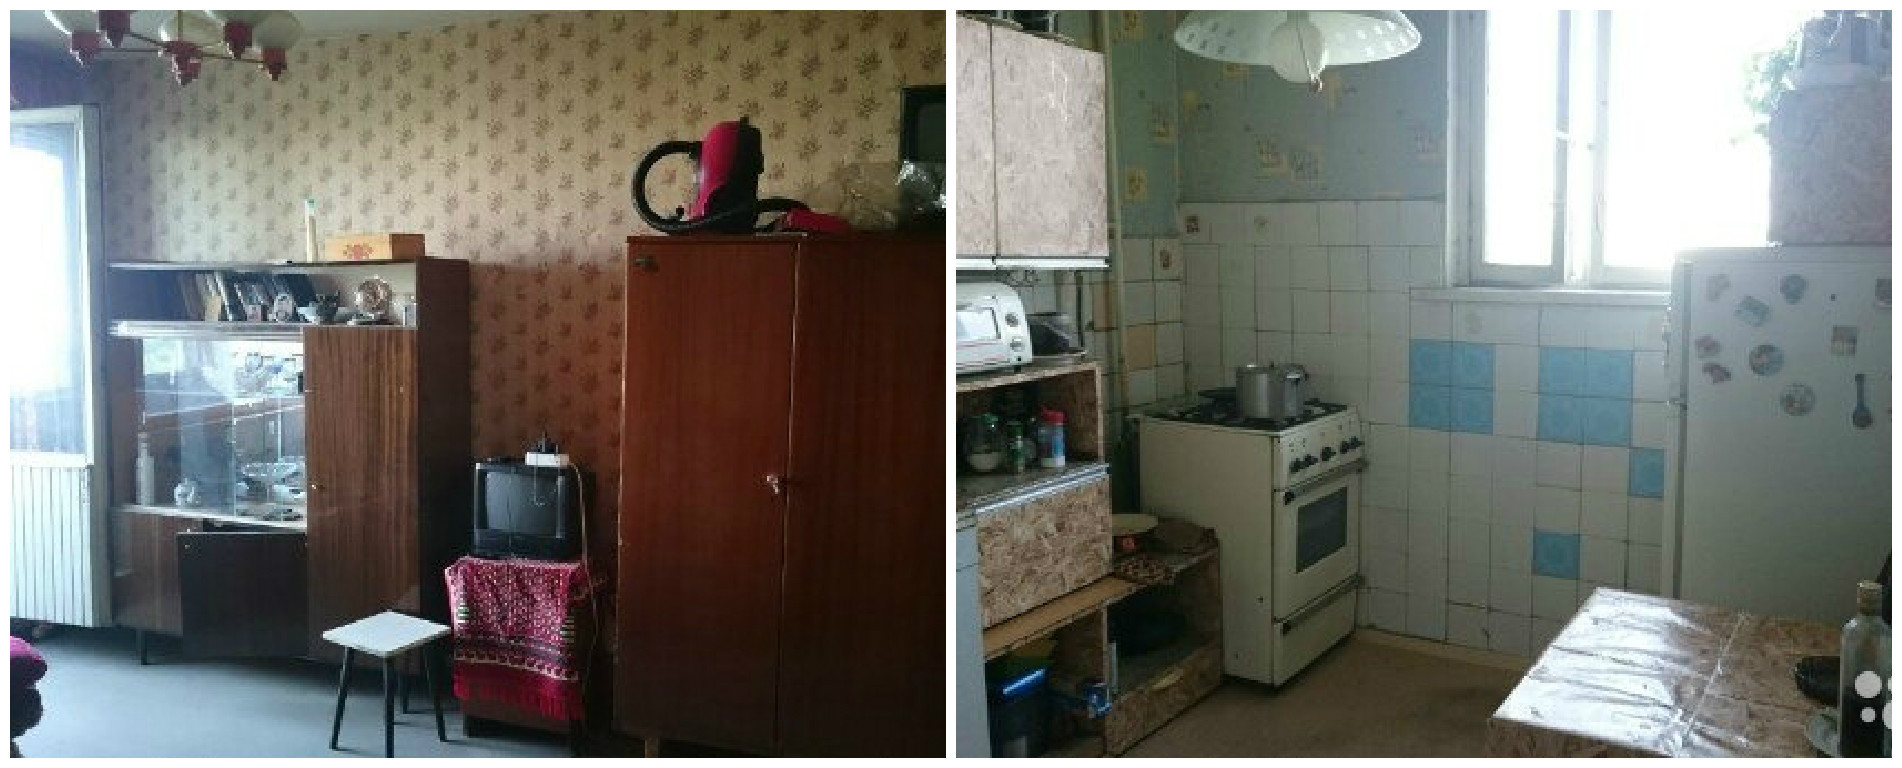 Квартира в Москве недалеко от ст. м. Аннино стоимостью 5 600 000 руб. заграница, квартира, курорты, москва, недвижимость, сравнение